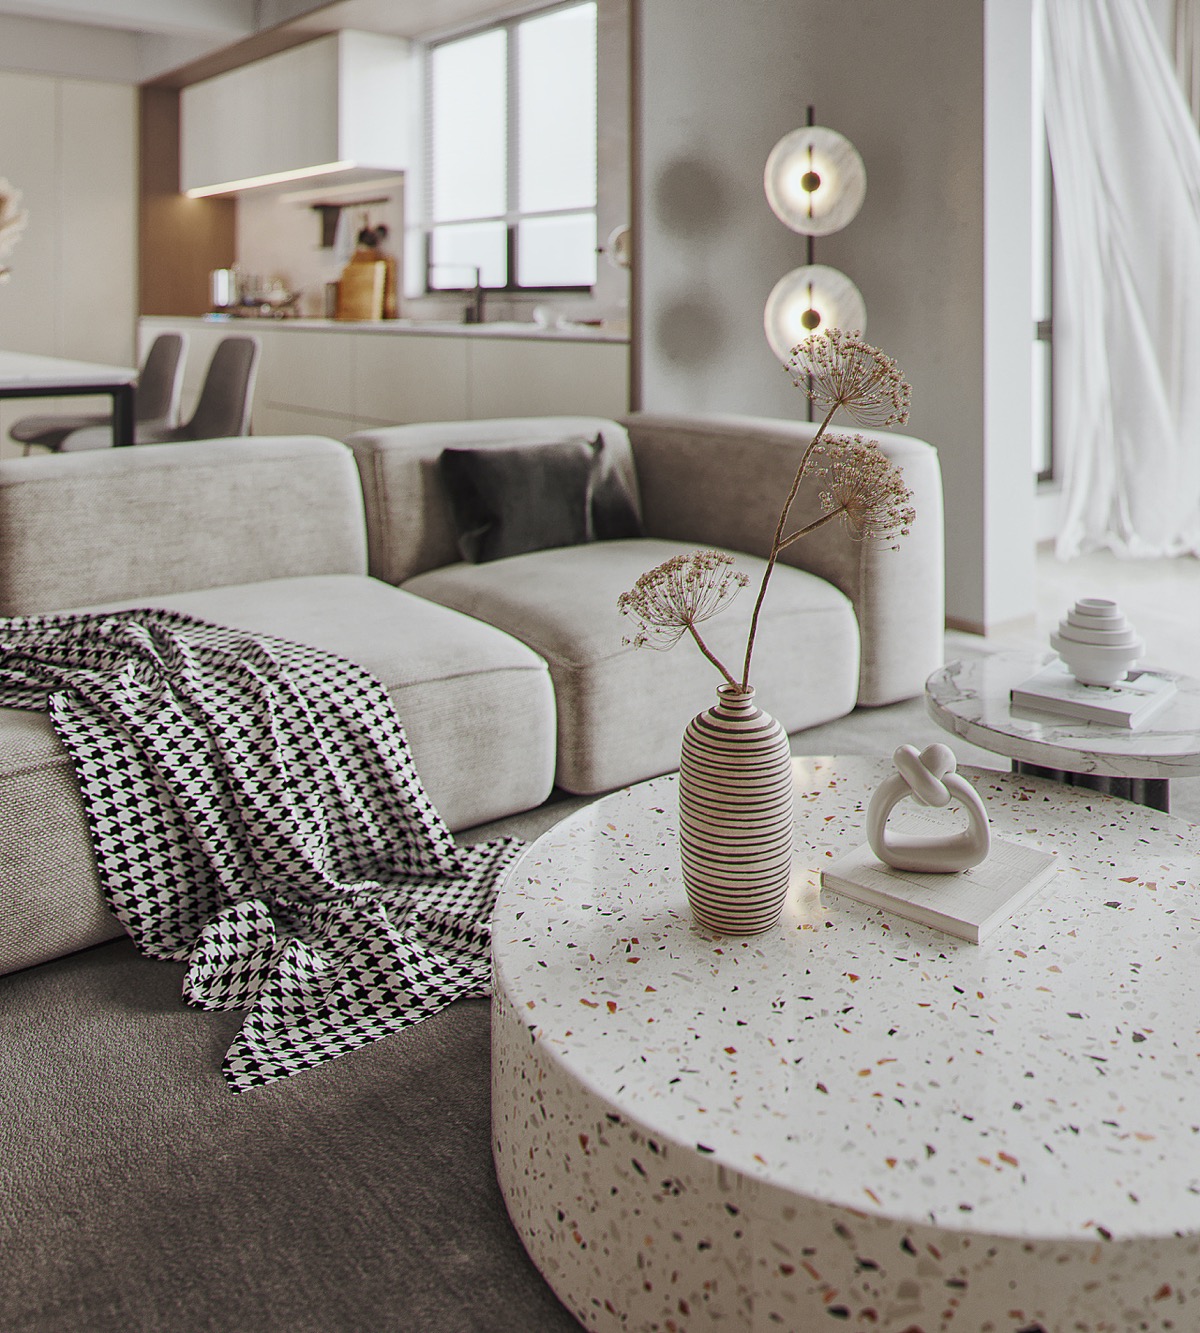 白色+木质，打造宁静时尚的现代家居空间